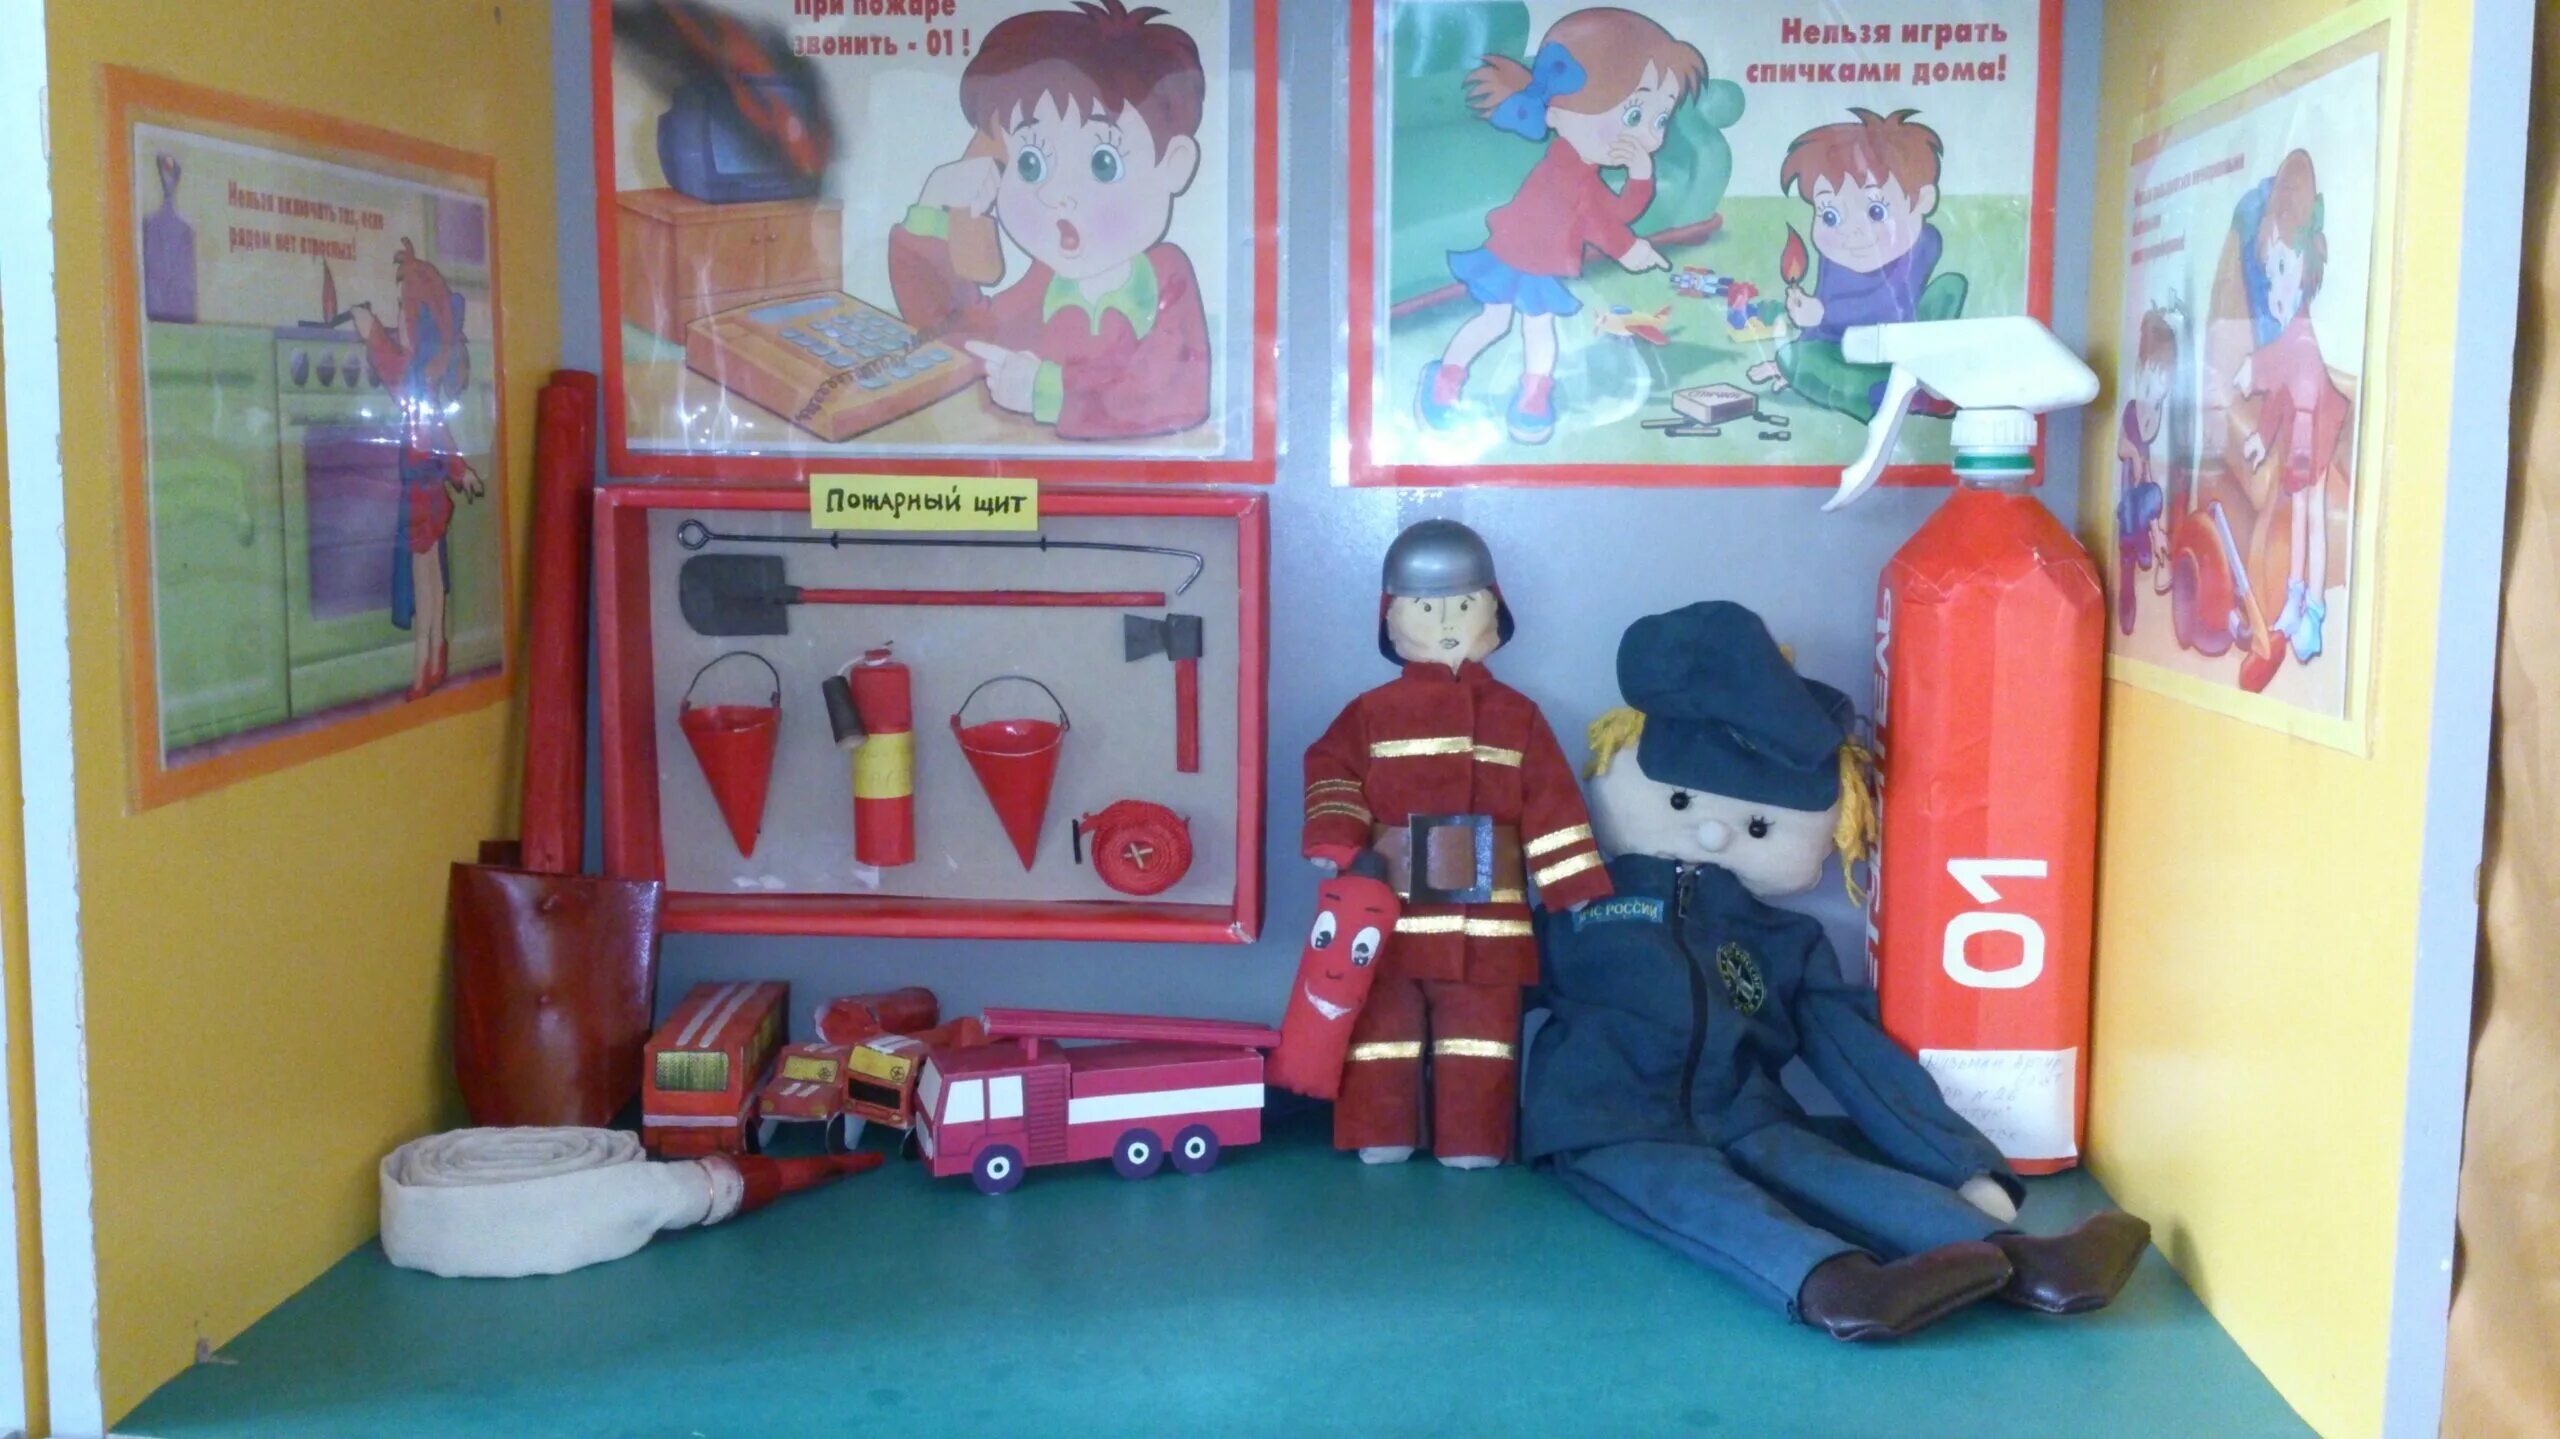 Пожарники в детском саду. Уголок пожарной безопасности в детском саду. Пожарный уголок в детском саду. Пожарный стенд в детском саду. Уголок по пожарной безопасности в ДОУ.